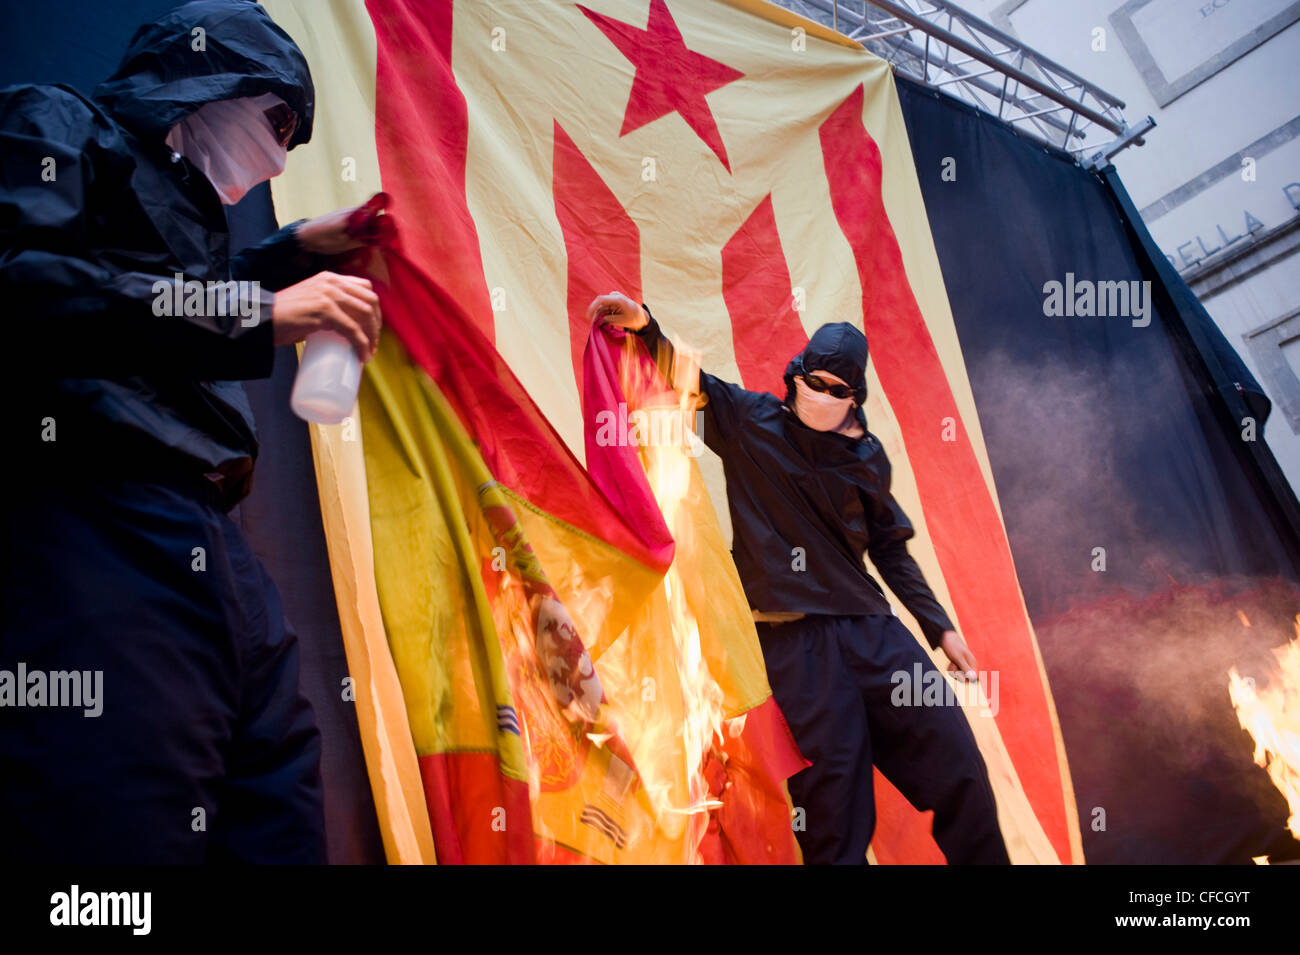 Les séparatistes catalans brûler un drapeau espagnol au cours des célébrations de la Journée nationale de la Catalogne à Barcelone, jour de l'indépendance. Banque D'Images